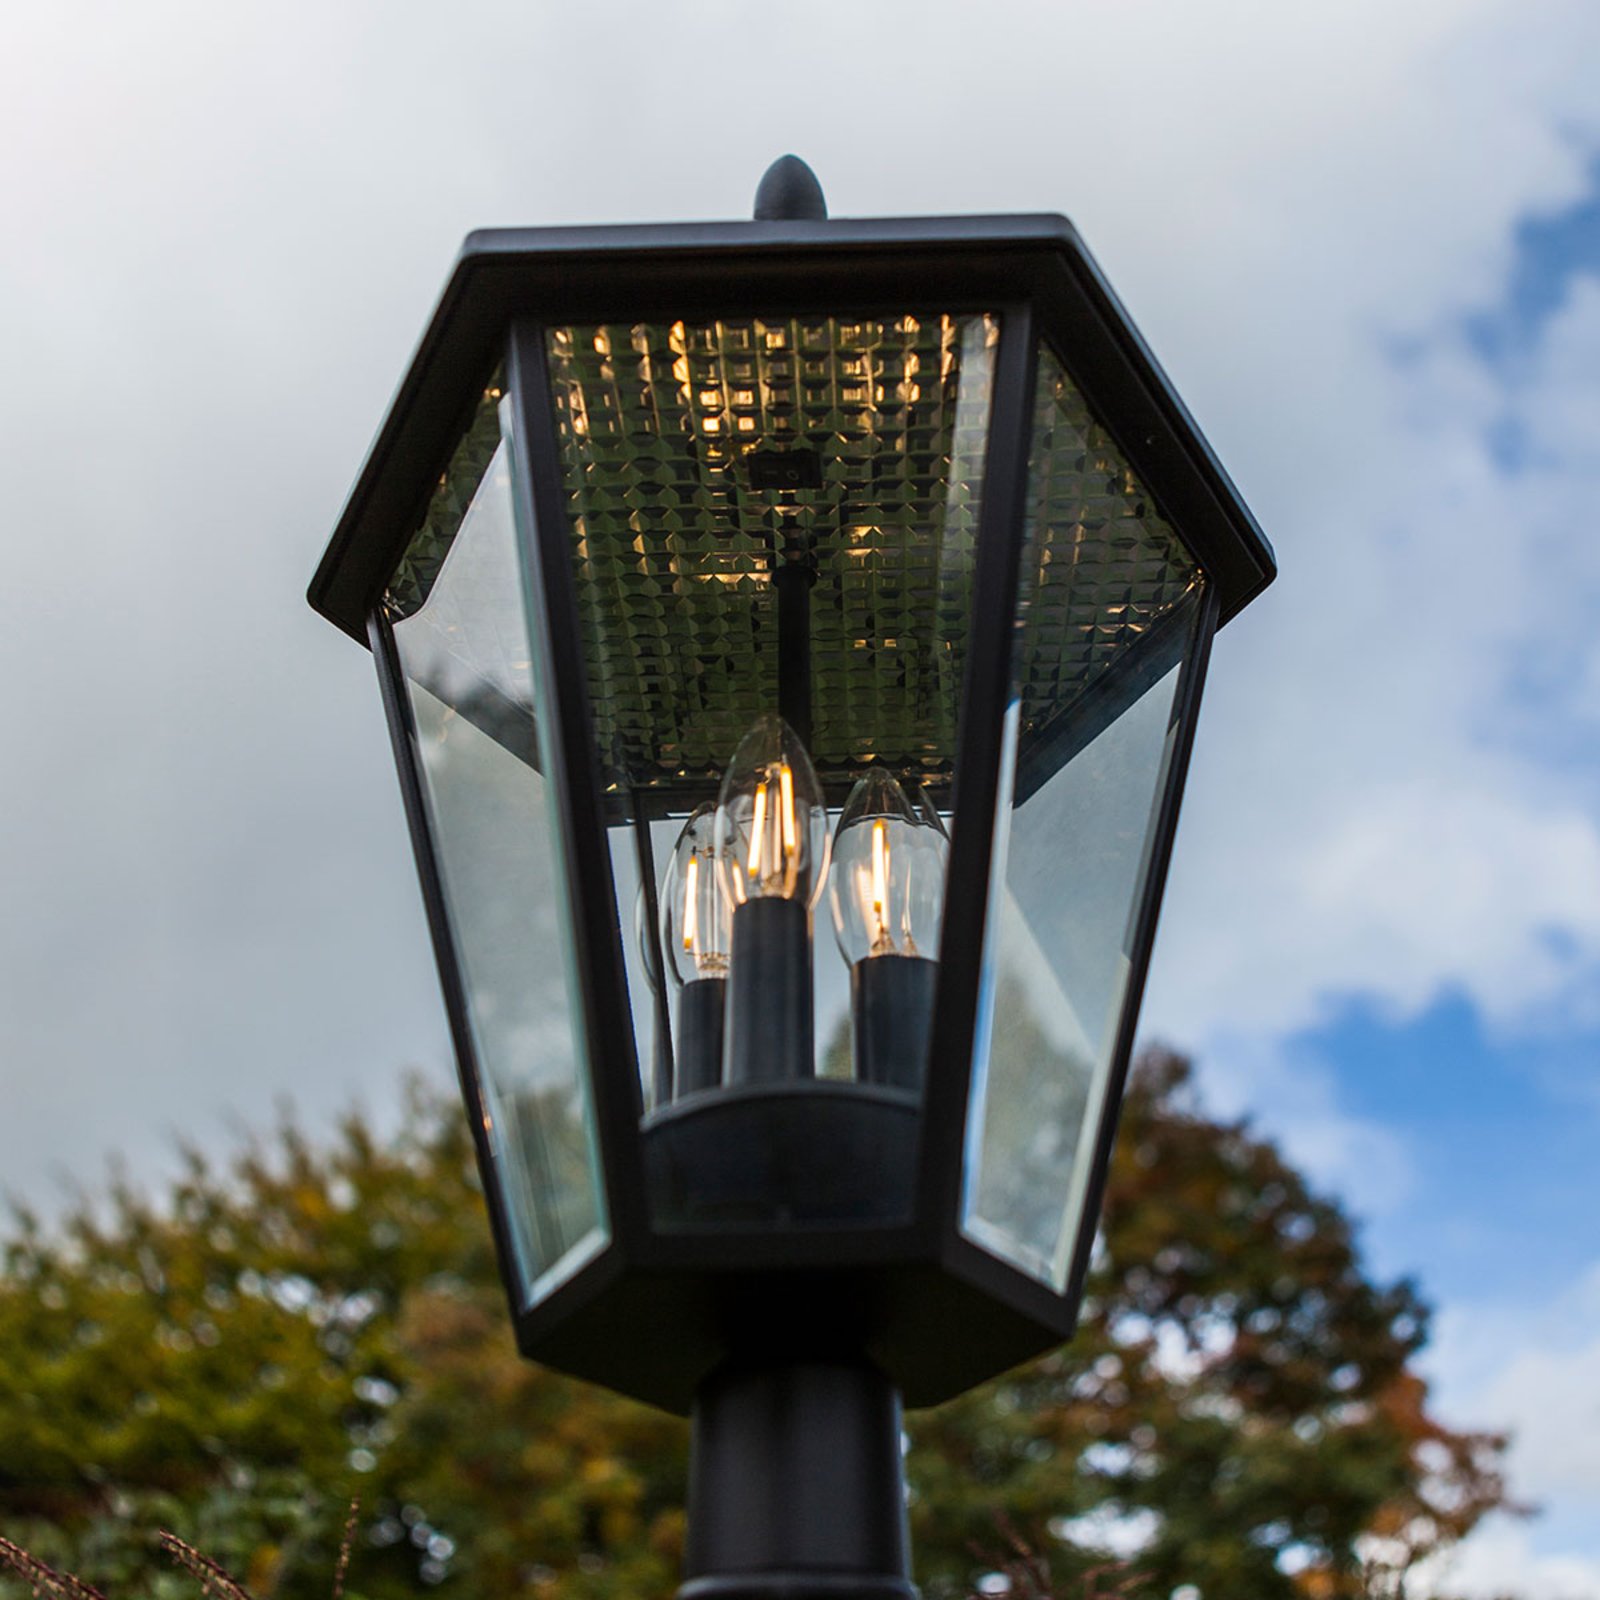 Árboc lámpa London retrofit LED lámpákkal